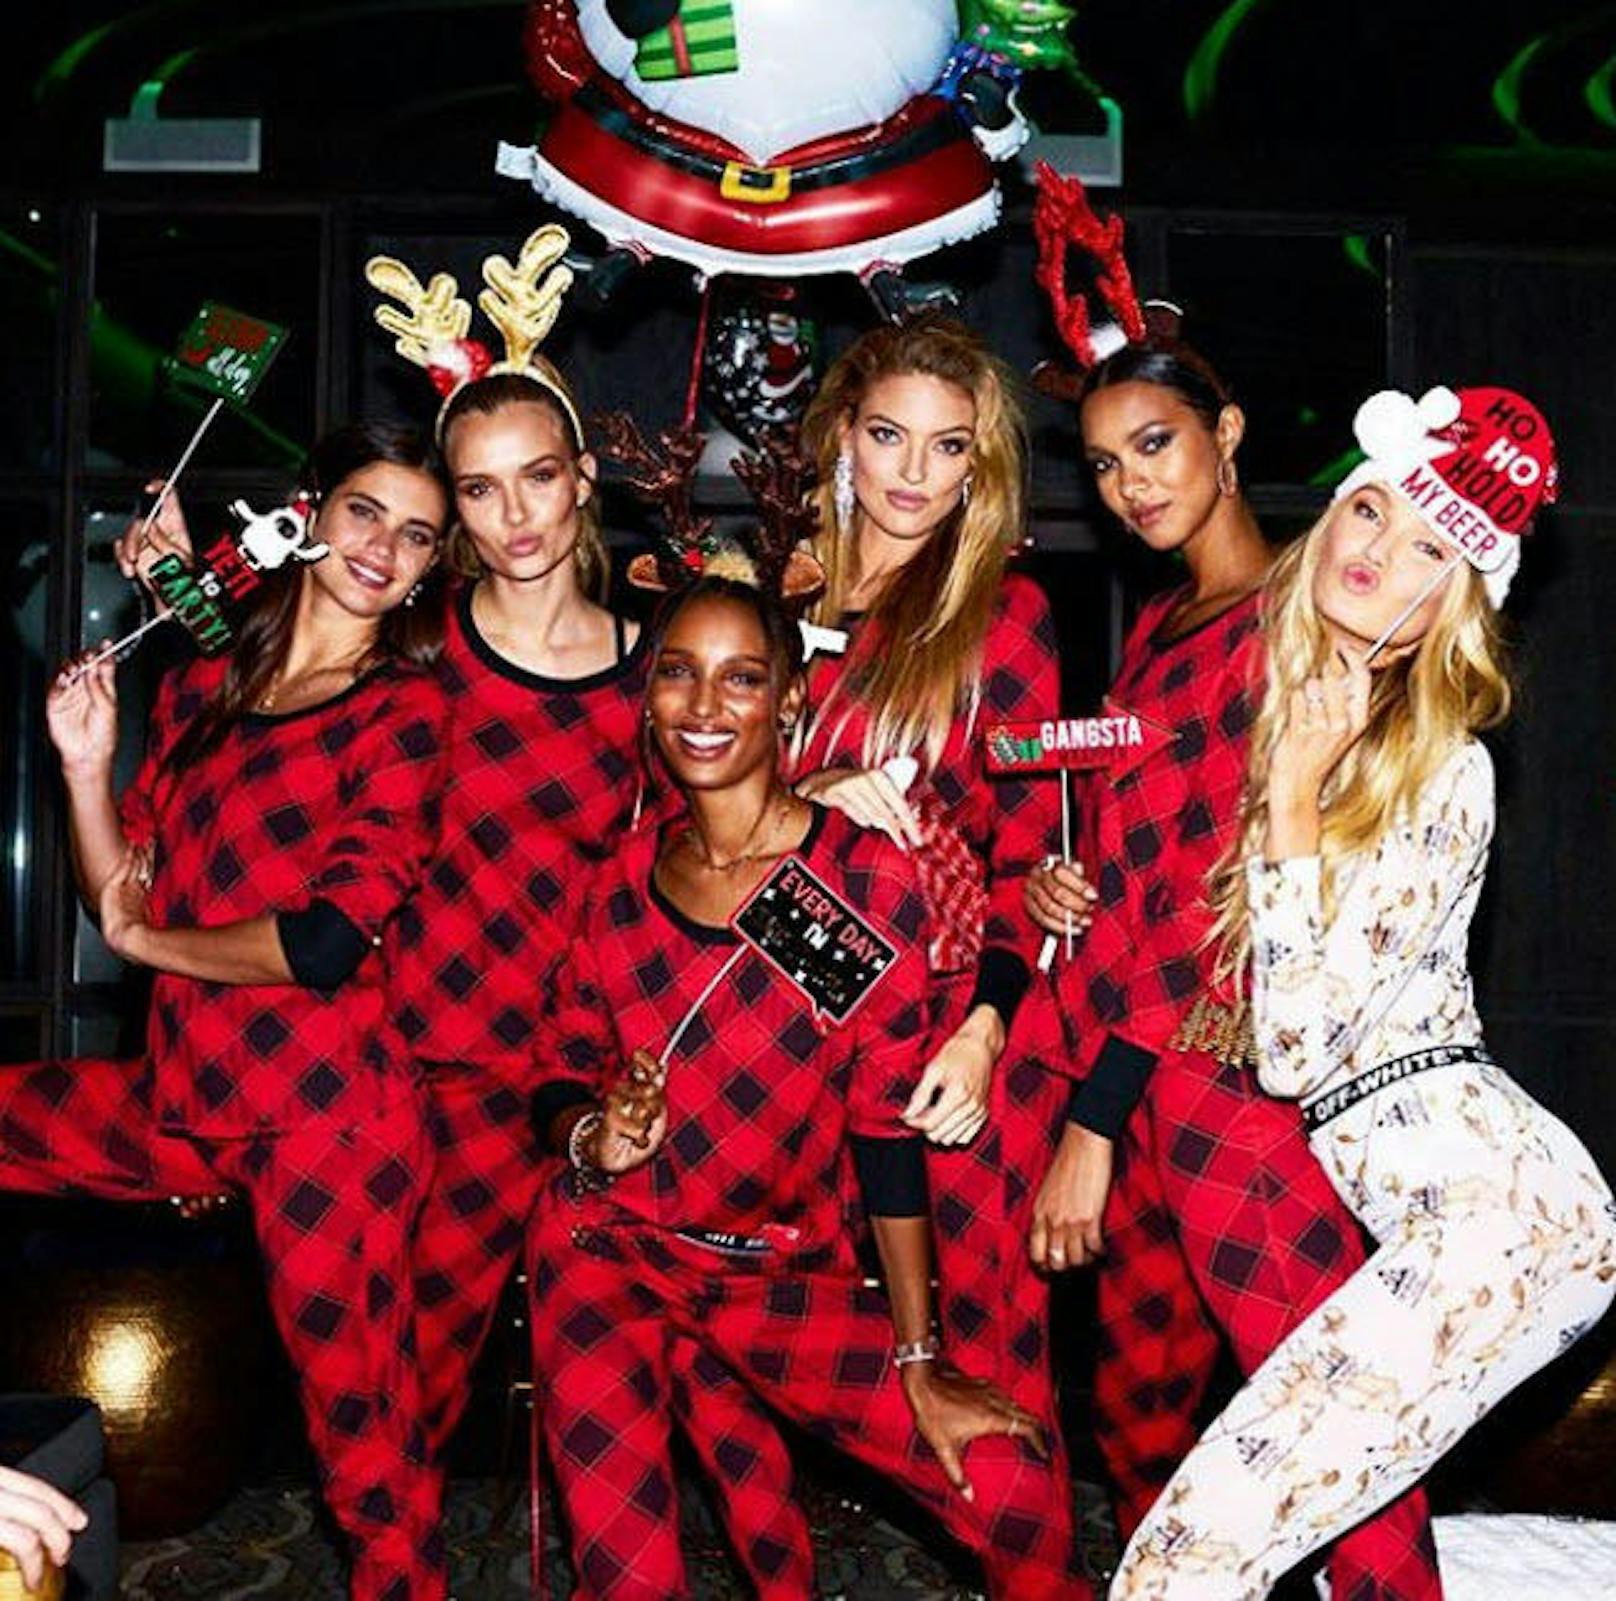 06.12.2018: Topmodels in Weihnachtsstimmung: Sara Sampaio, Kosephine Skriver, Martha Hunt, Lais Ribeiro und Romee Strijd feiern in festlichen Outfits. 